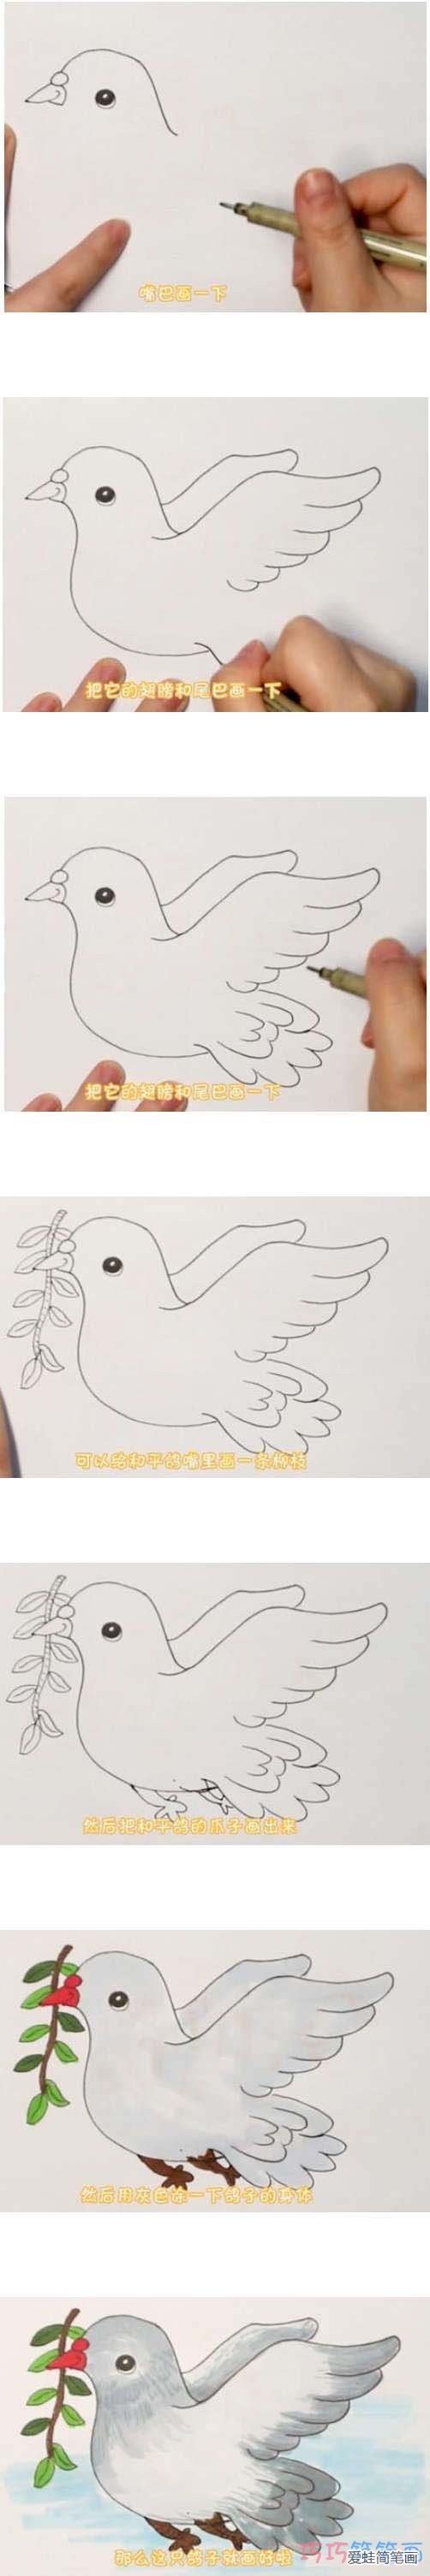 教你一步一步手绘和平鸽简笔画